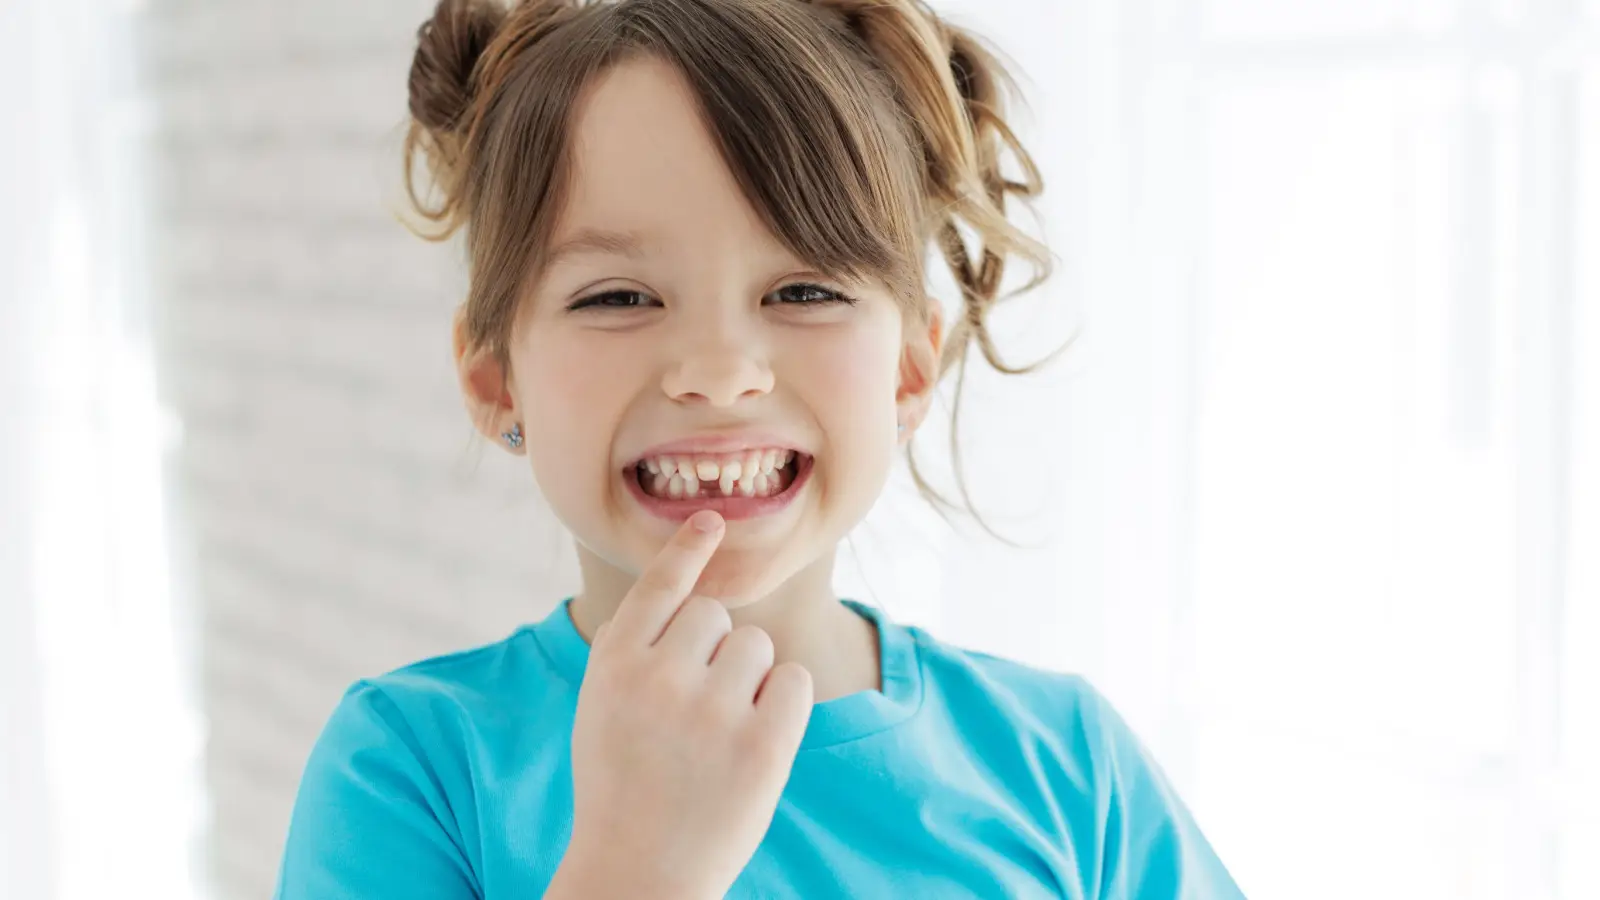 ما هو ترتيب ظهور الأسنان اللبنية عن الأطفال؟